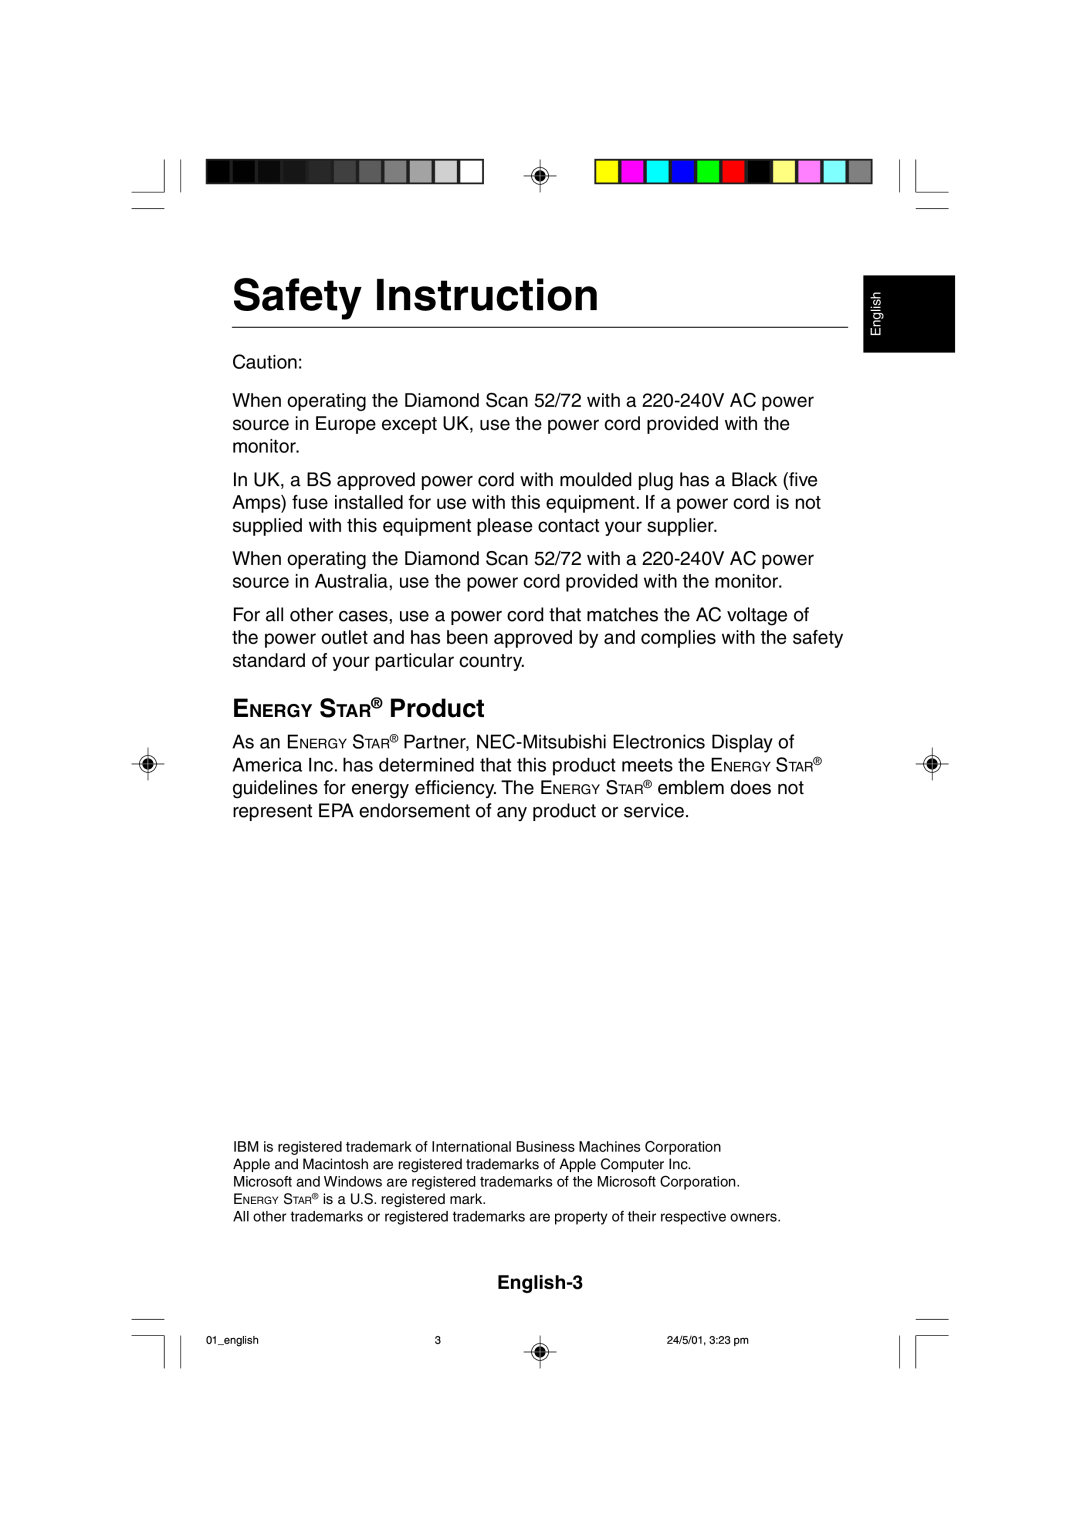 Mitsubishi Electronics M557 user manual Safety Instruction, ENERGY STAR Product 